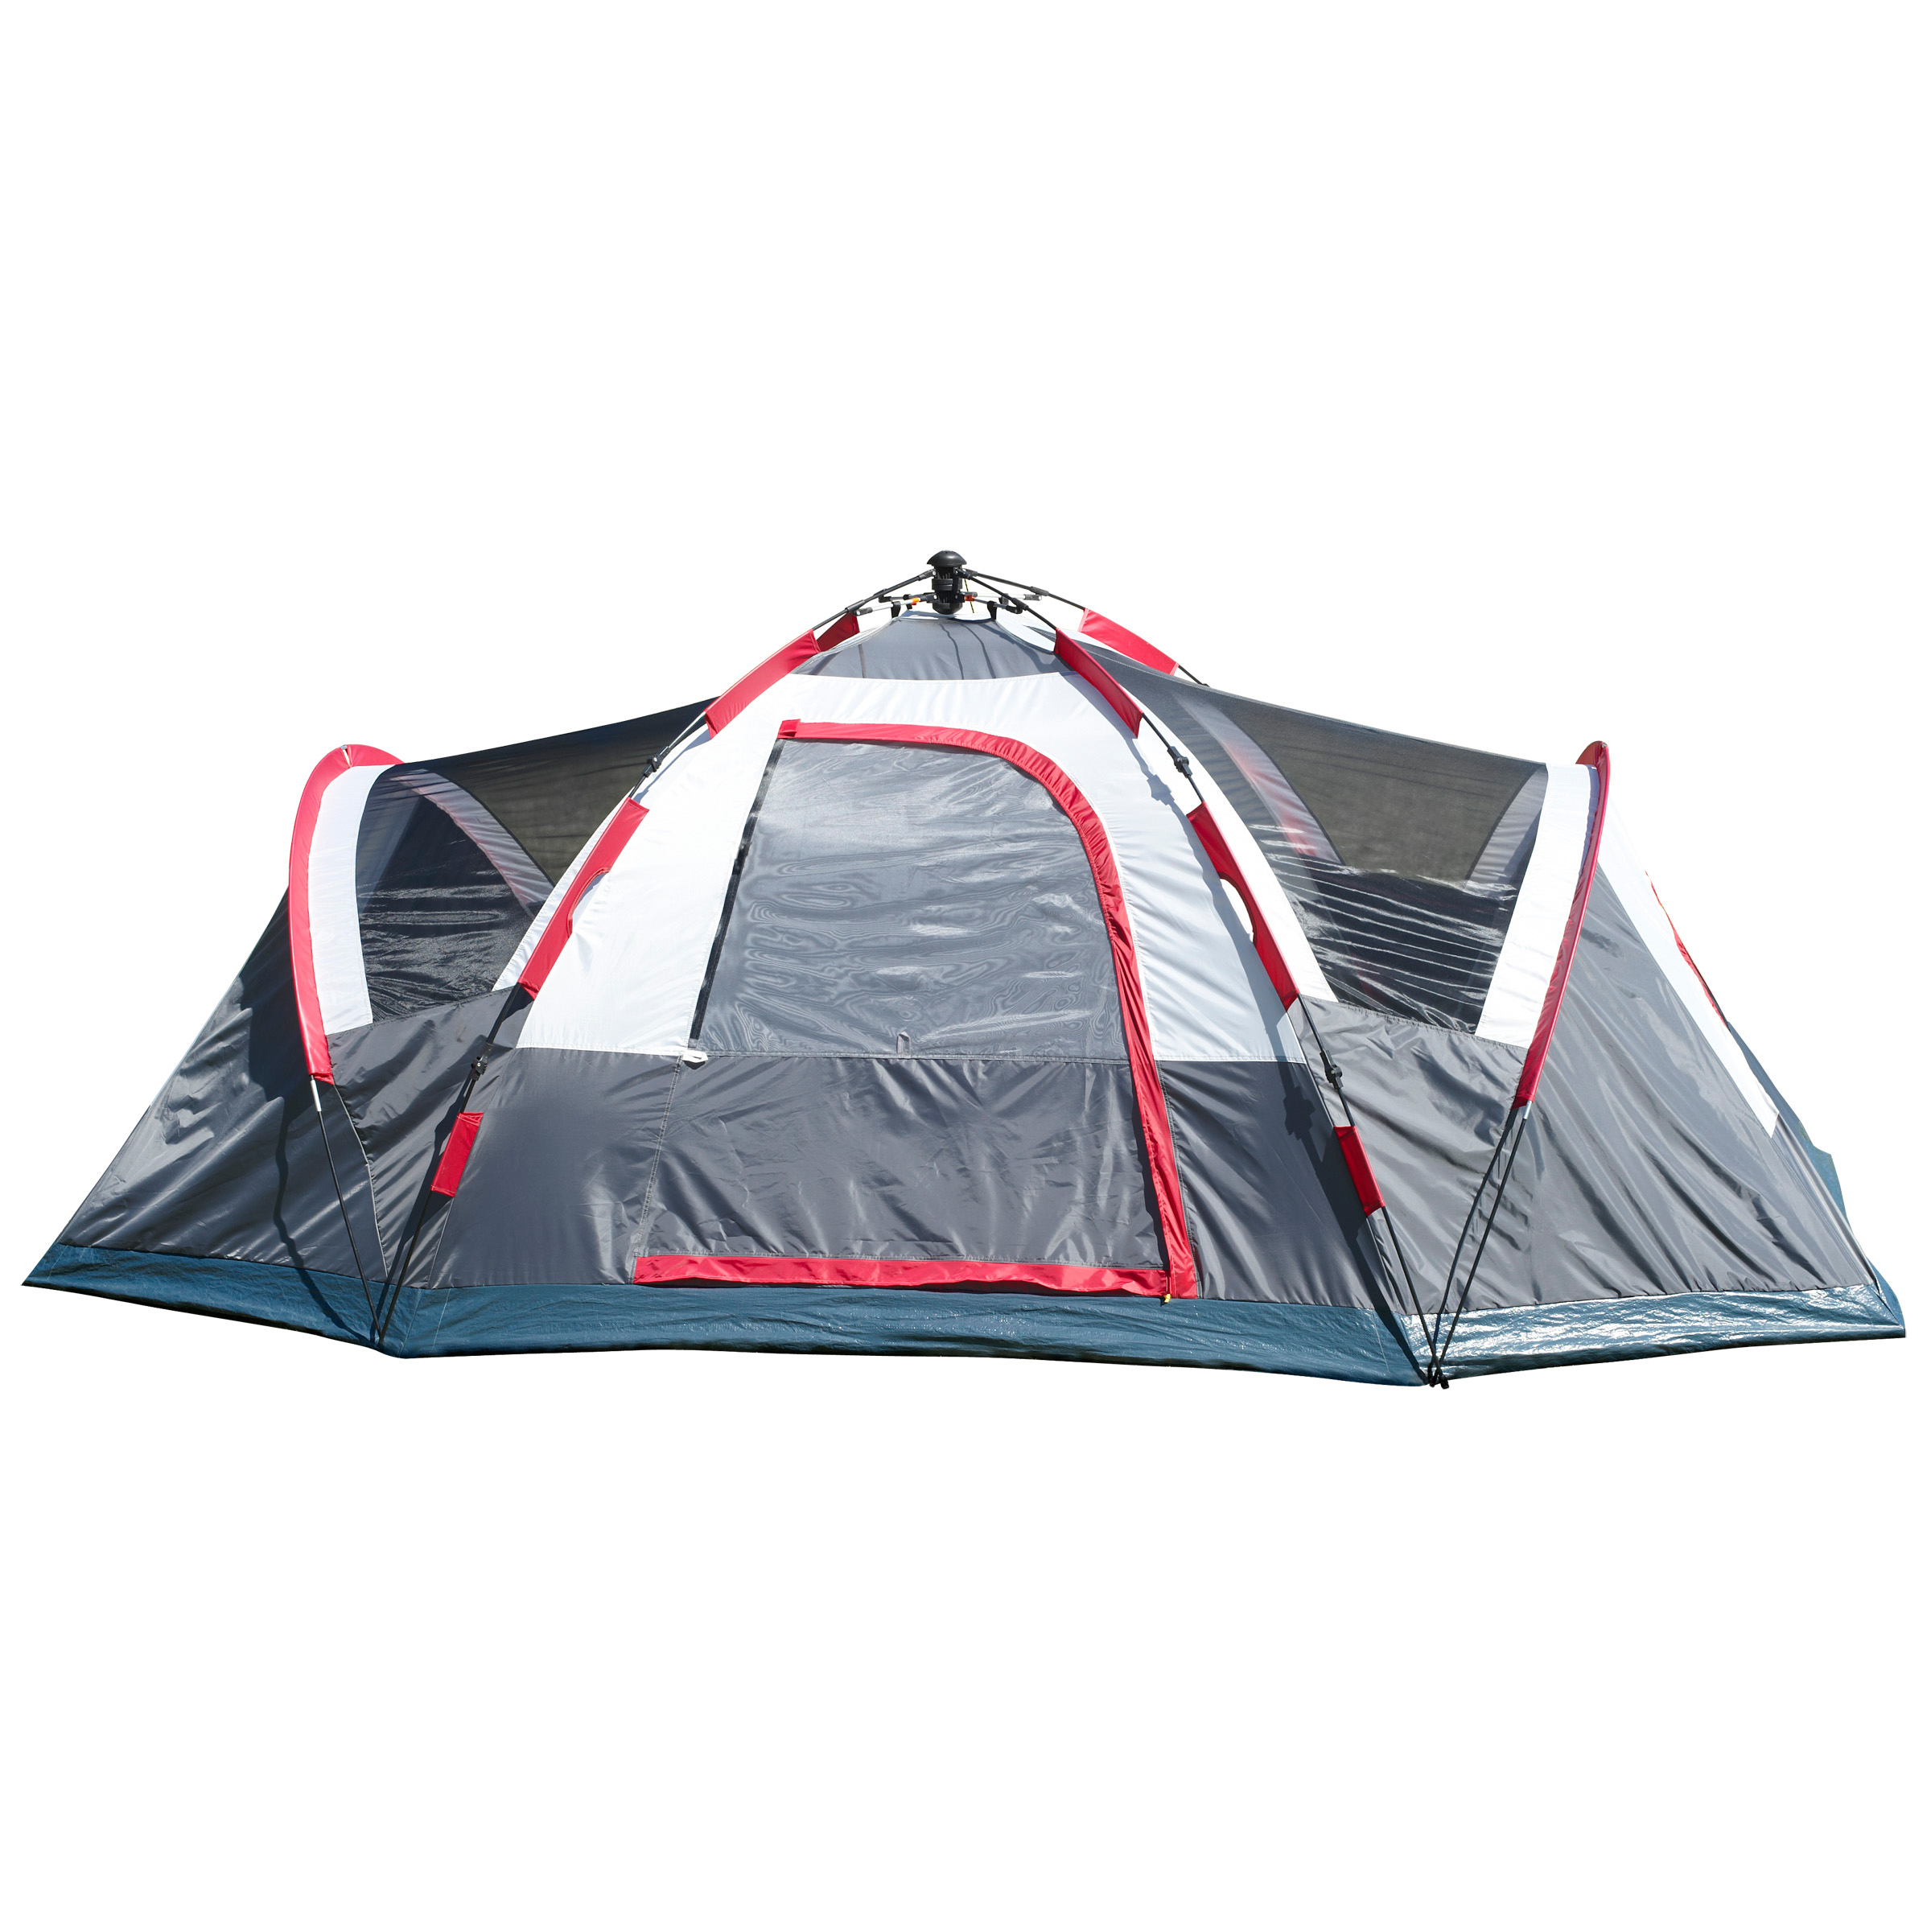 lightspeed tent